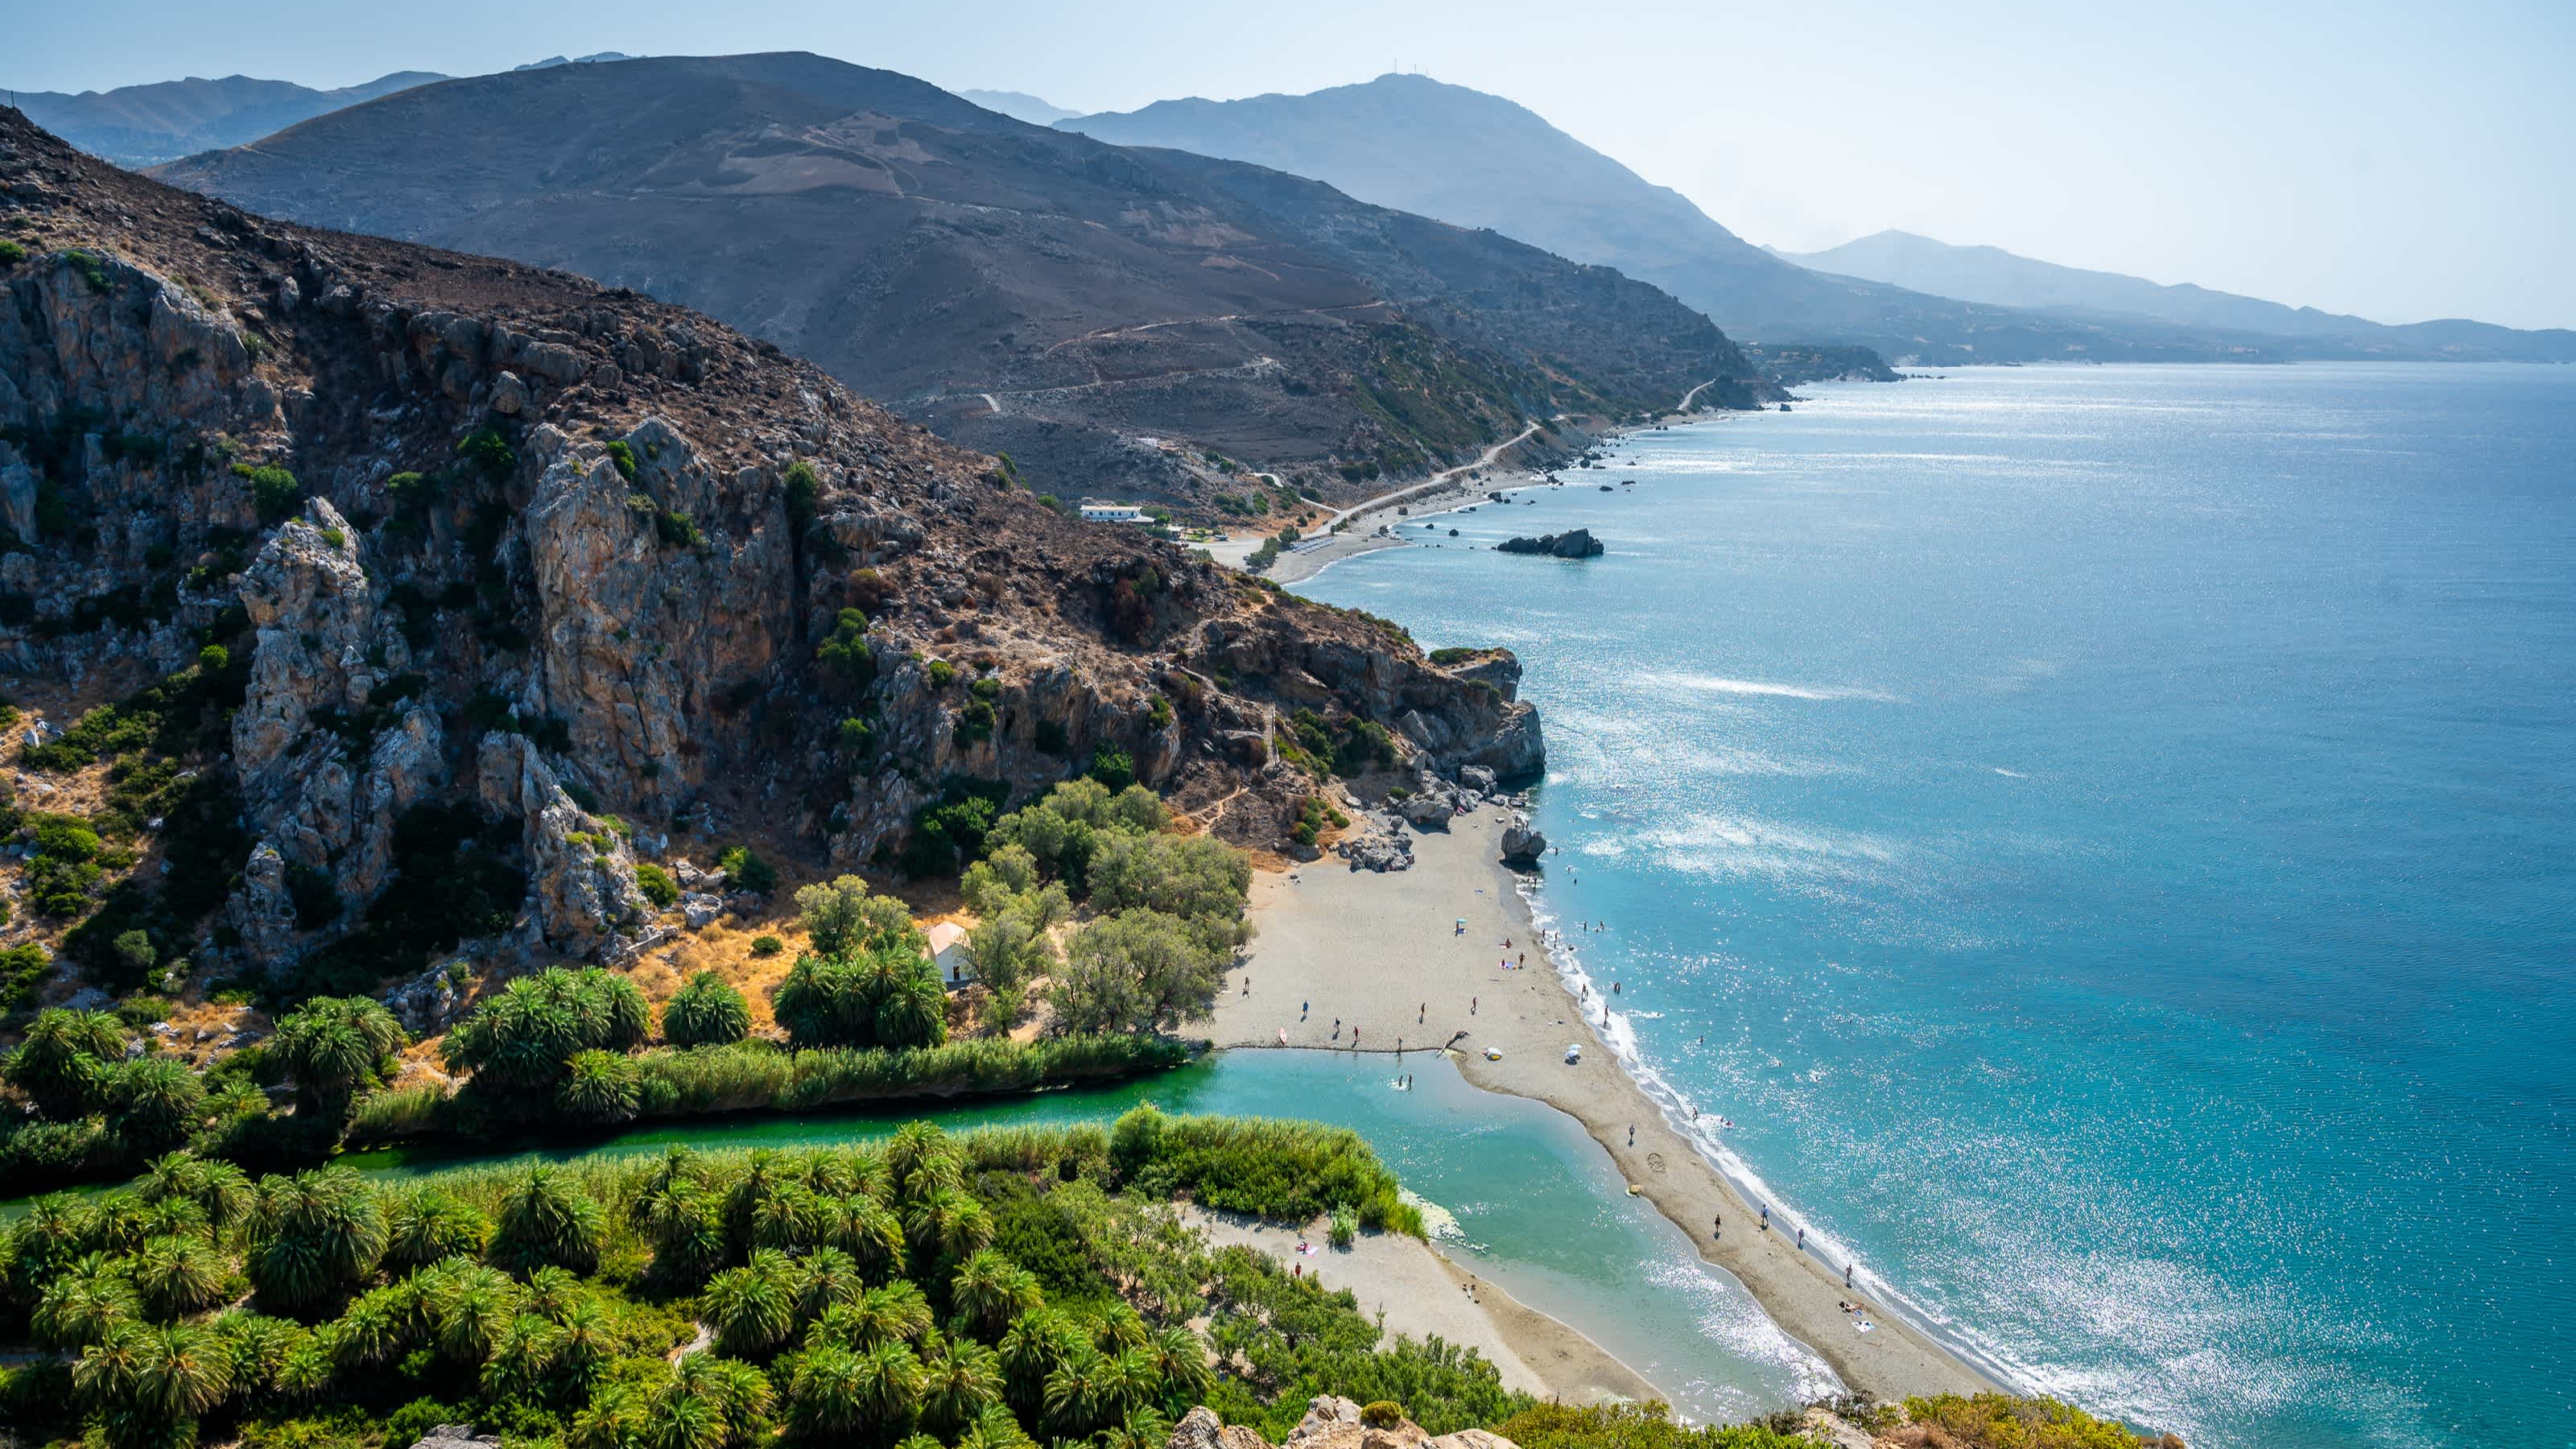 Blick auf den berühmten Preveli Strand im Sommer, Kreta, Griechenland.